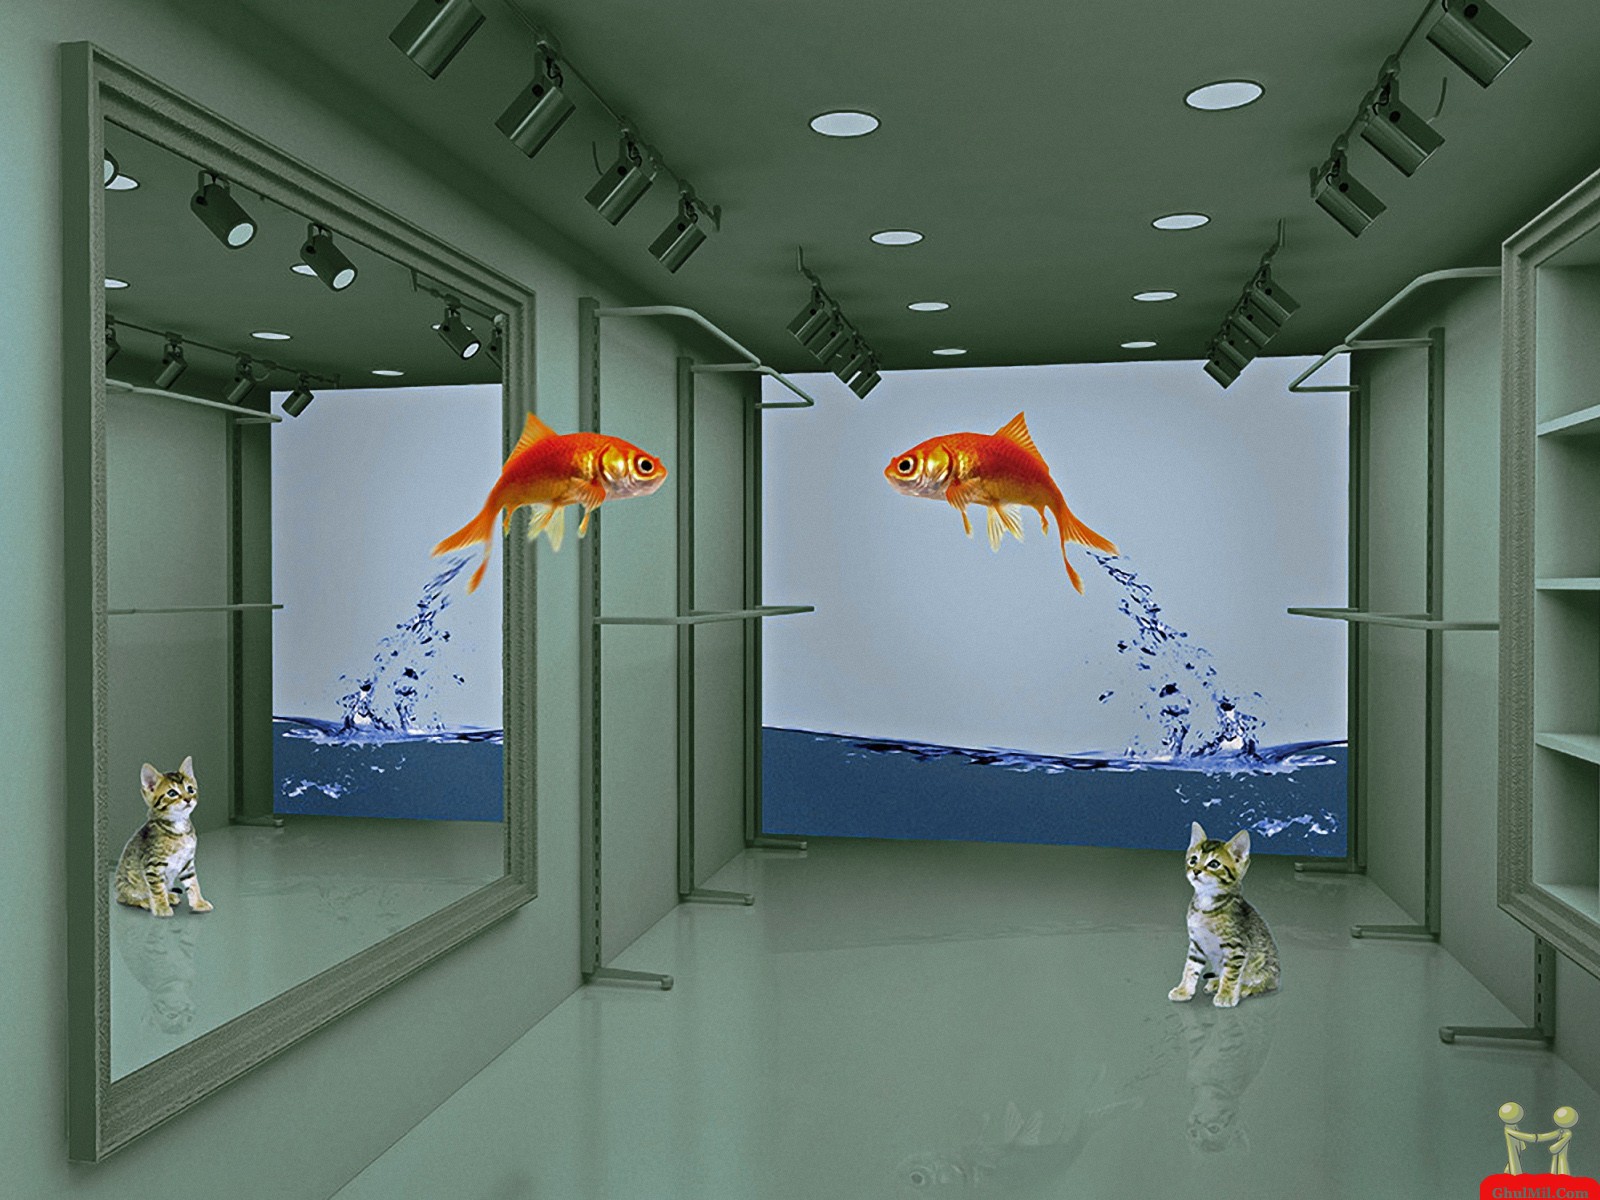 49+] Moving Fish Wallpaper - WallpaperSafari